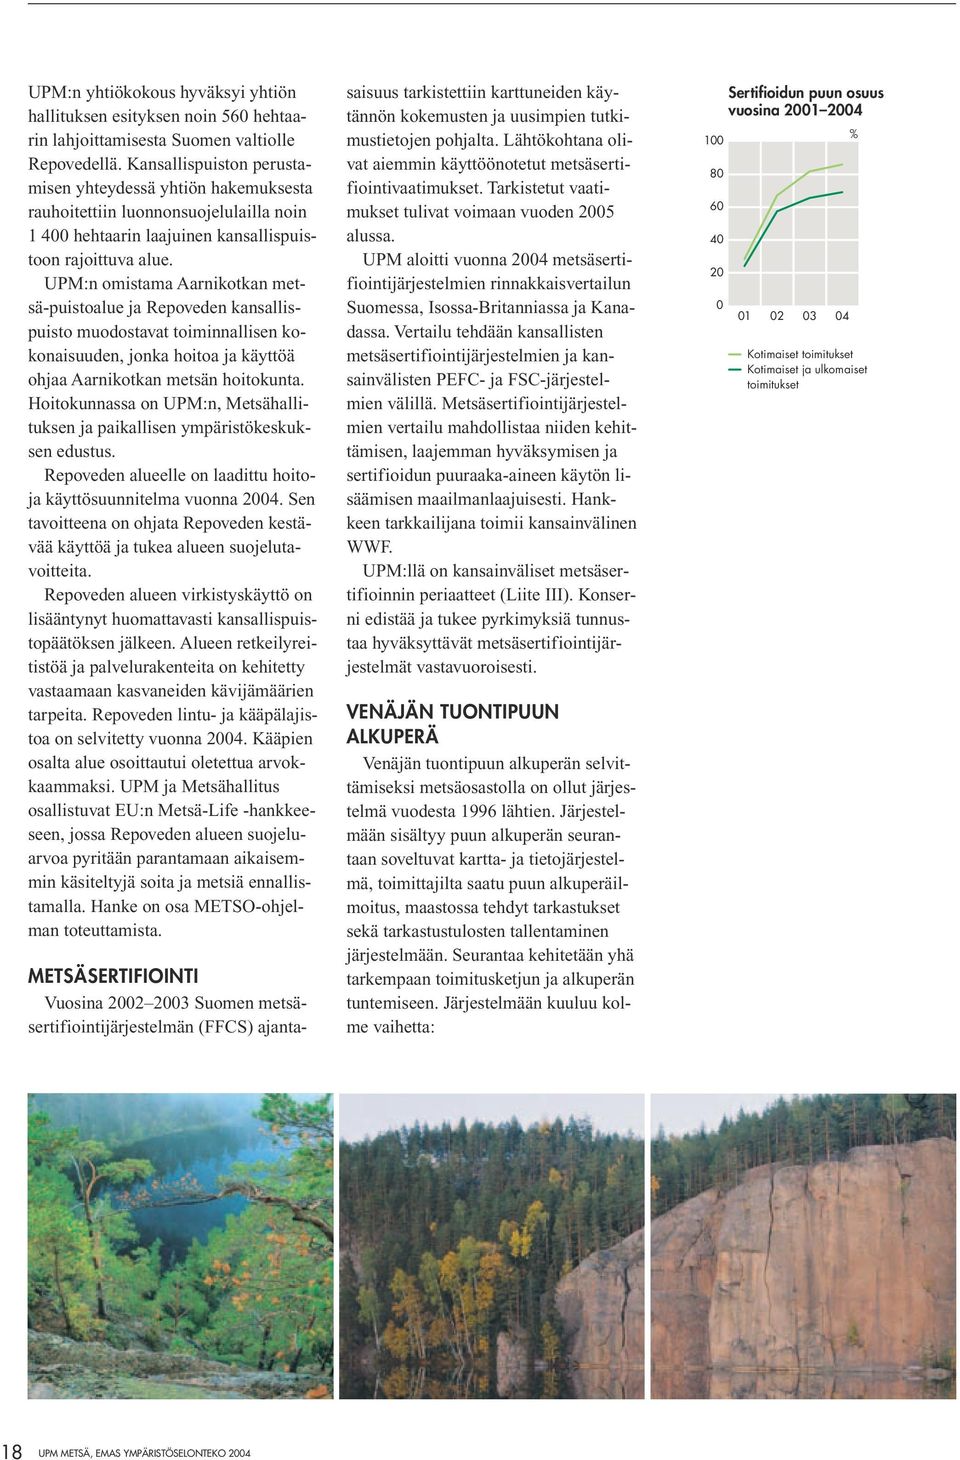 UPM:n omistama Aarnikotkan metsä-puistoalue ja Repoveden kansallispuisto muodostavat toiminnallisen kokonaisuuden, jonka hoitoa ja käyttöä ohjaa Aarnikotkan metsän hoitokunta.